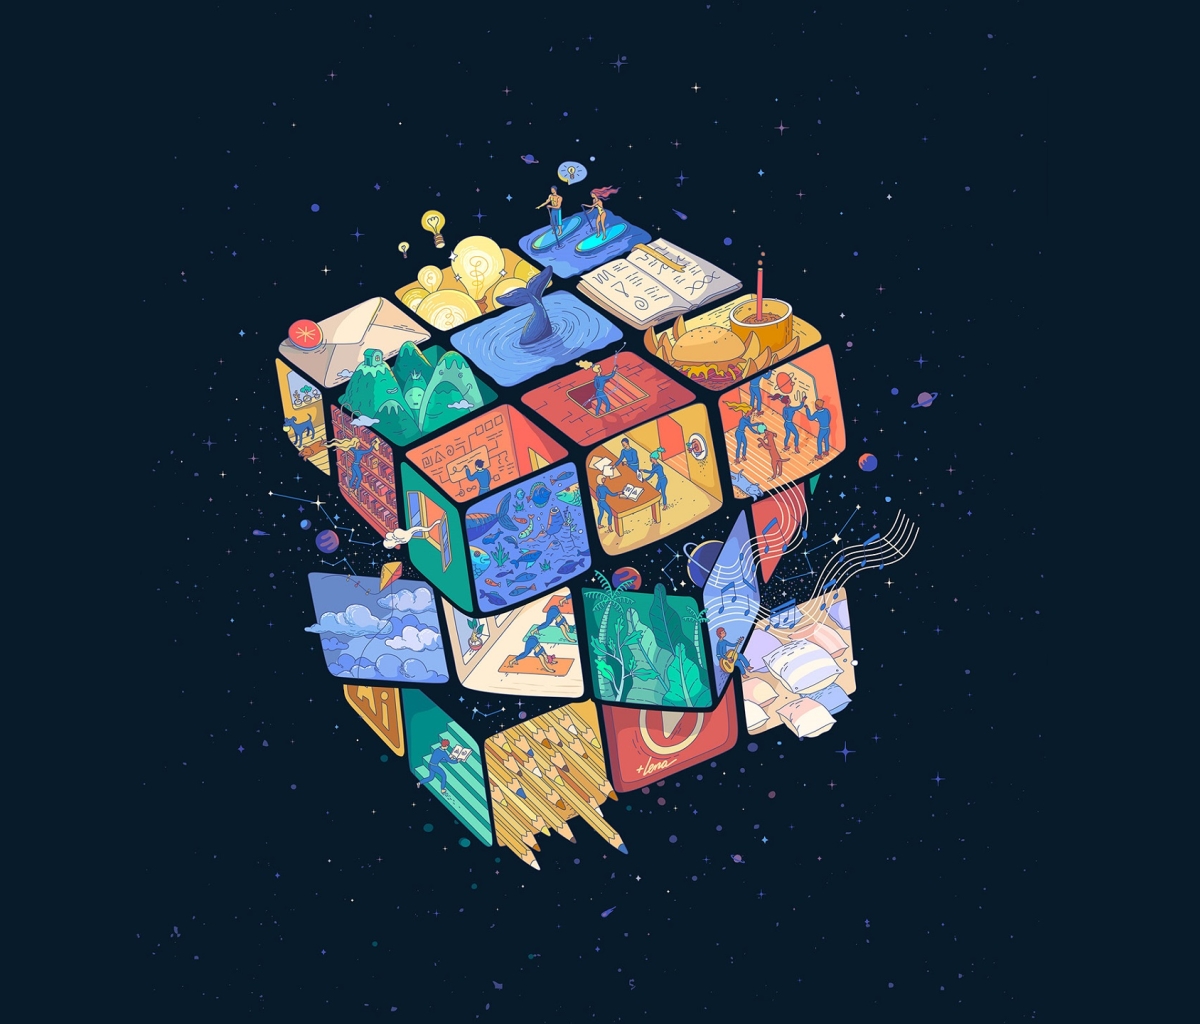 rubik's cube, game